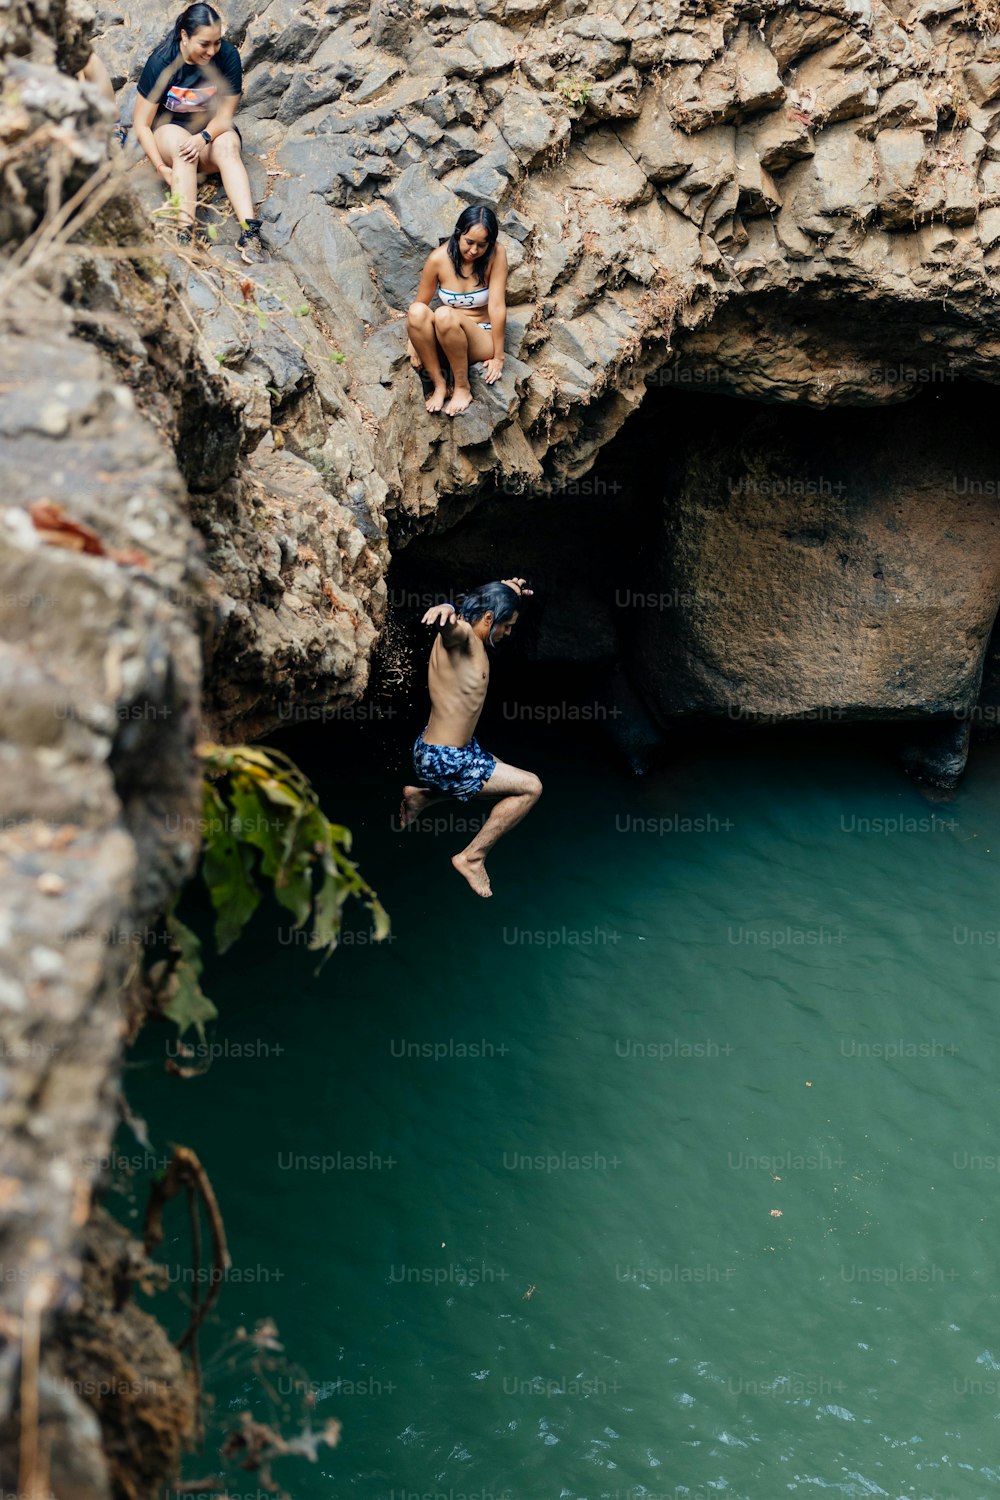 Un groupe de personnes sautant d’une falaise dans un plan d’eau